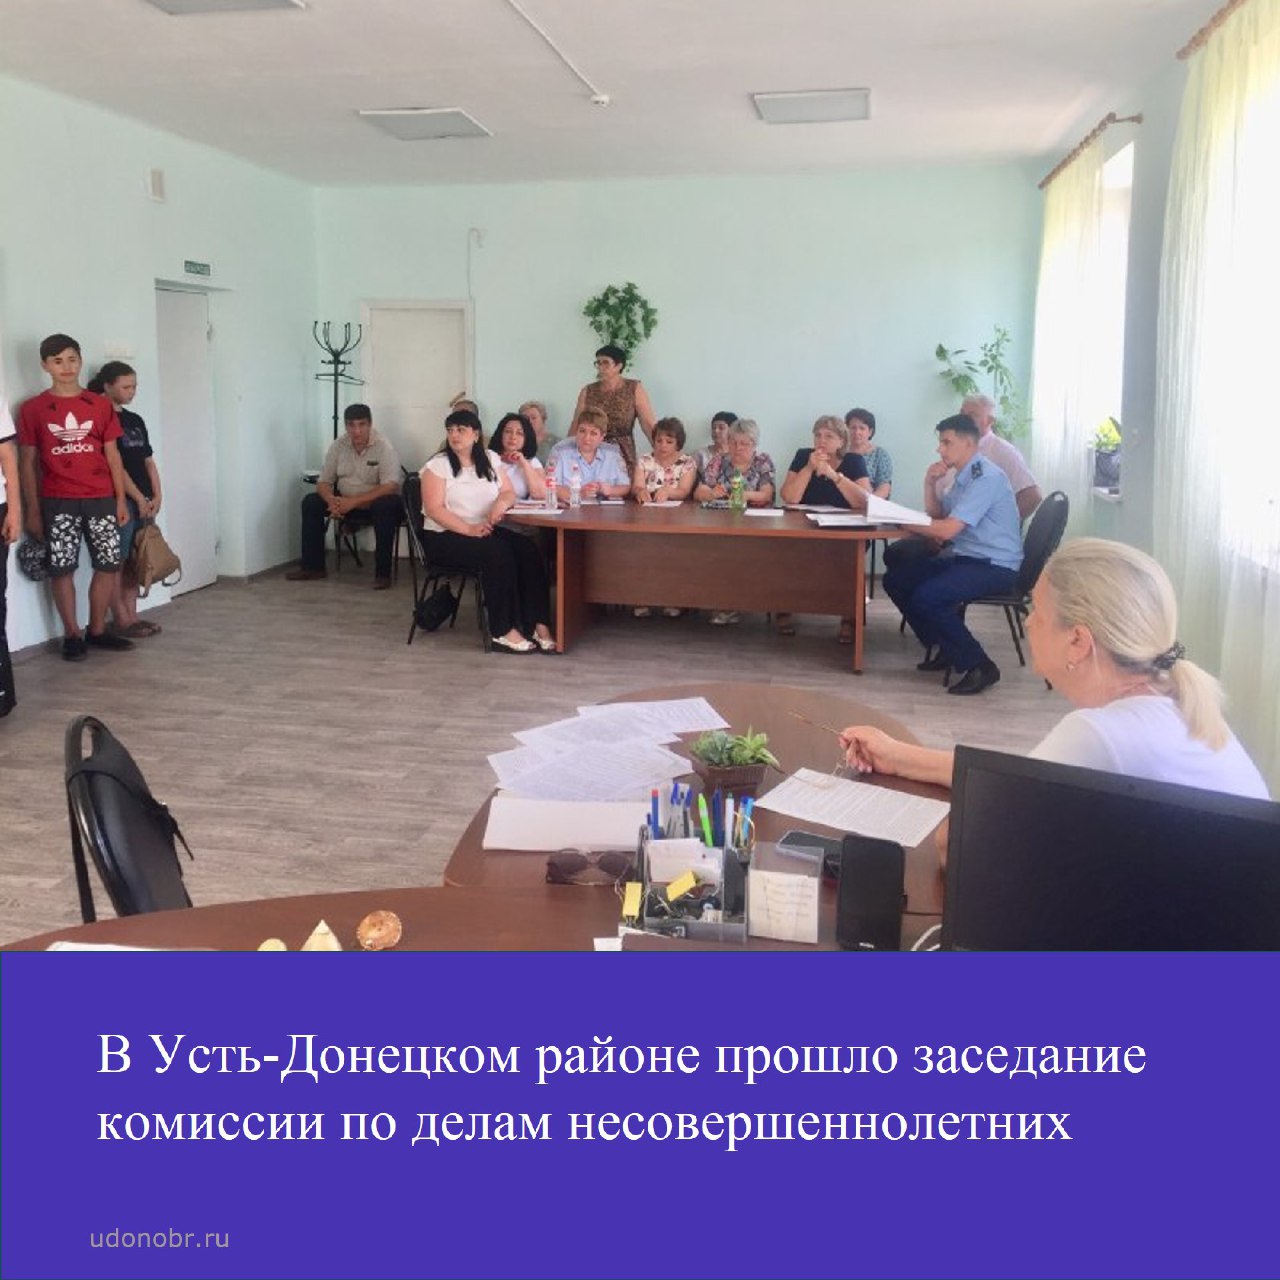 В Усть-Донецком районе прошло заседание комиссии по делам несовершеннолетних